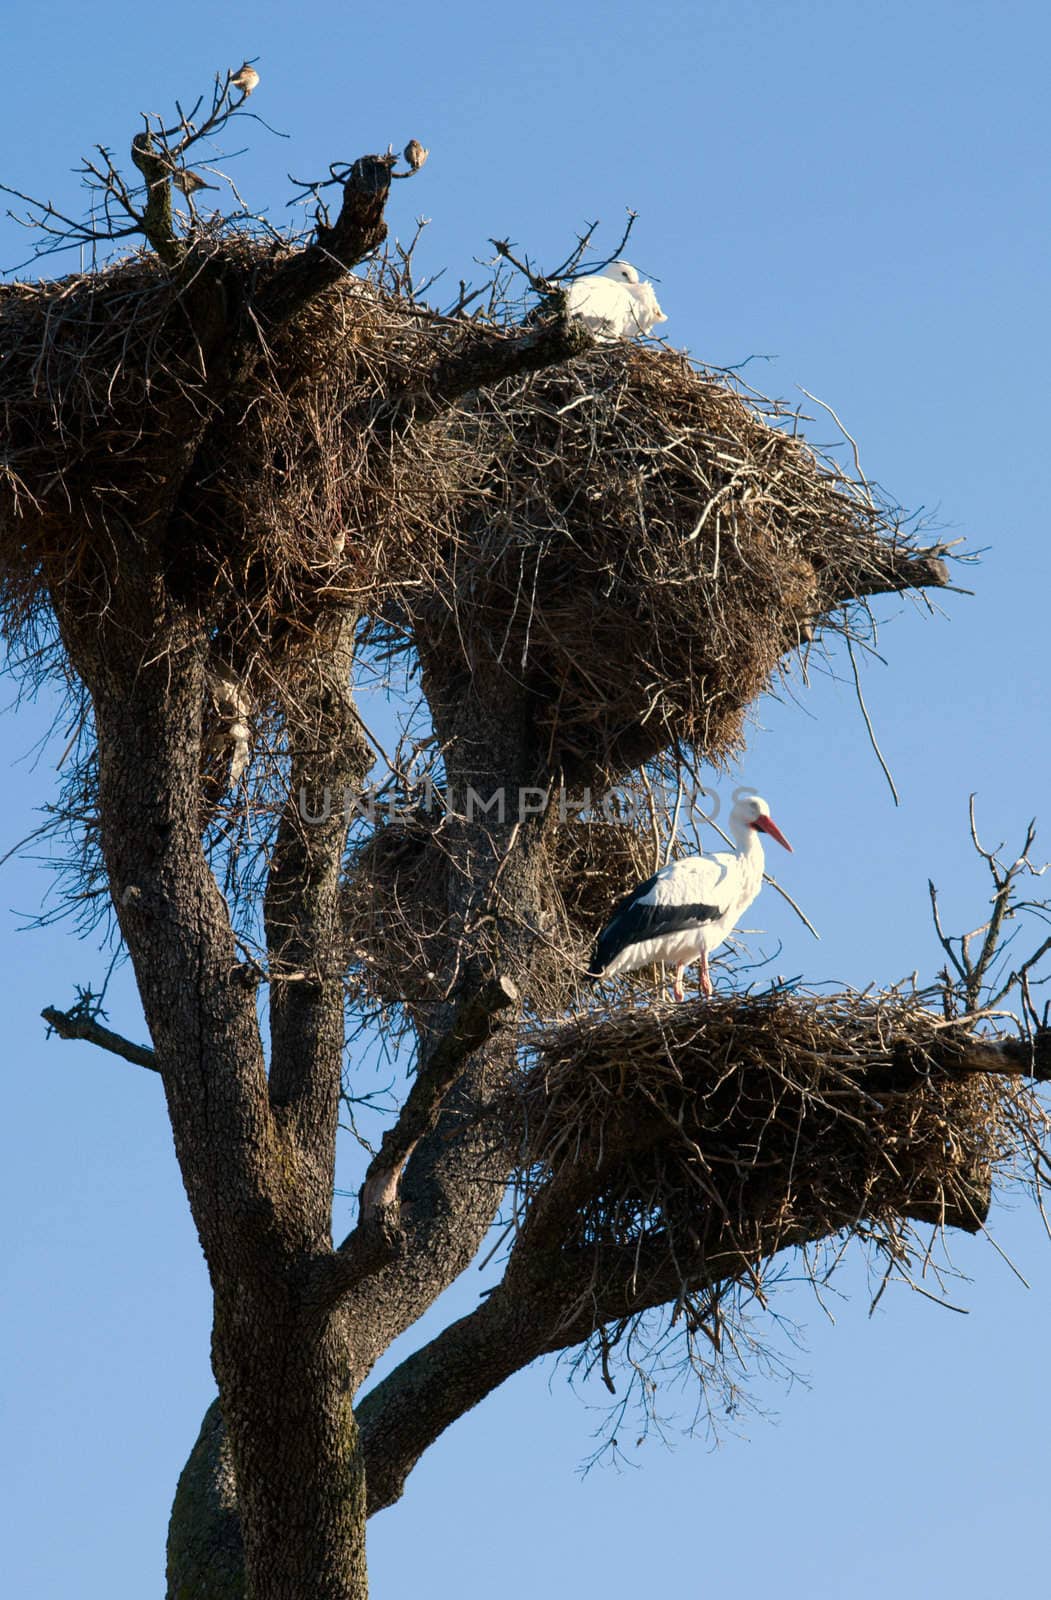 Stork nest by kzen